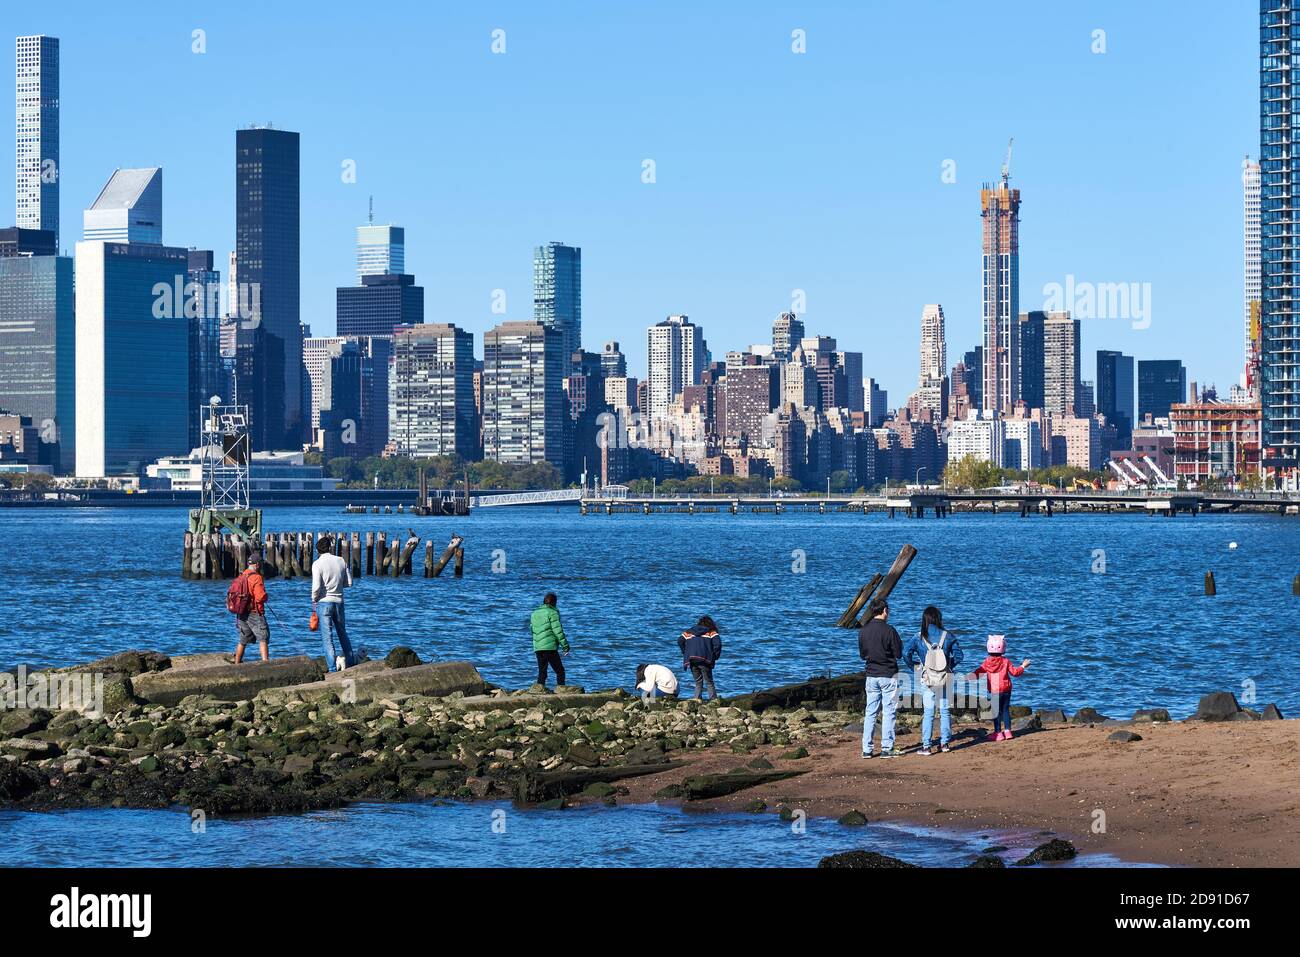 Les familles apprécient de se tenir au bord de l'East River à Williamsburg, Brooklyn, NY, avec les gratte-ciel de Manhattan en arrière-plan Banque D'Images